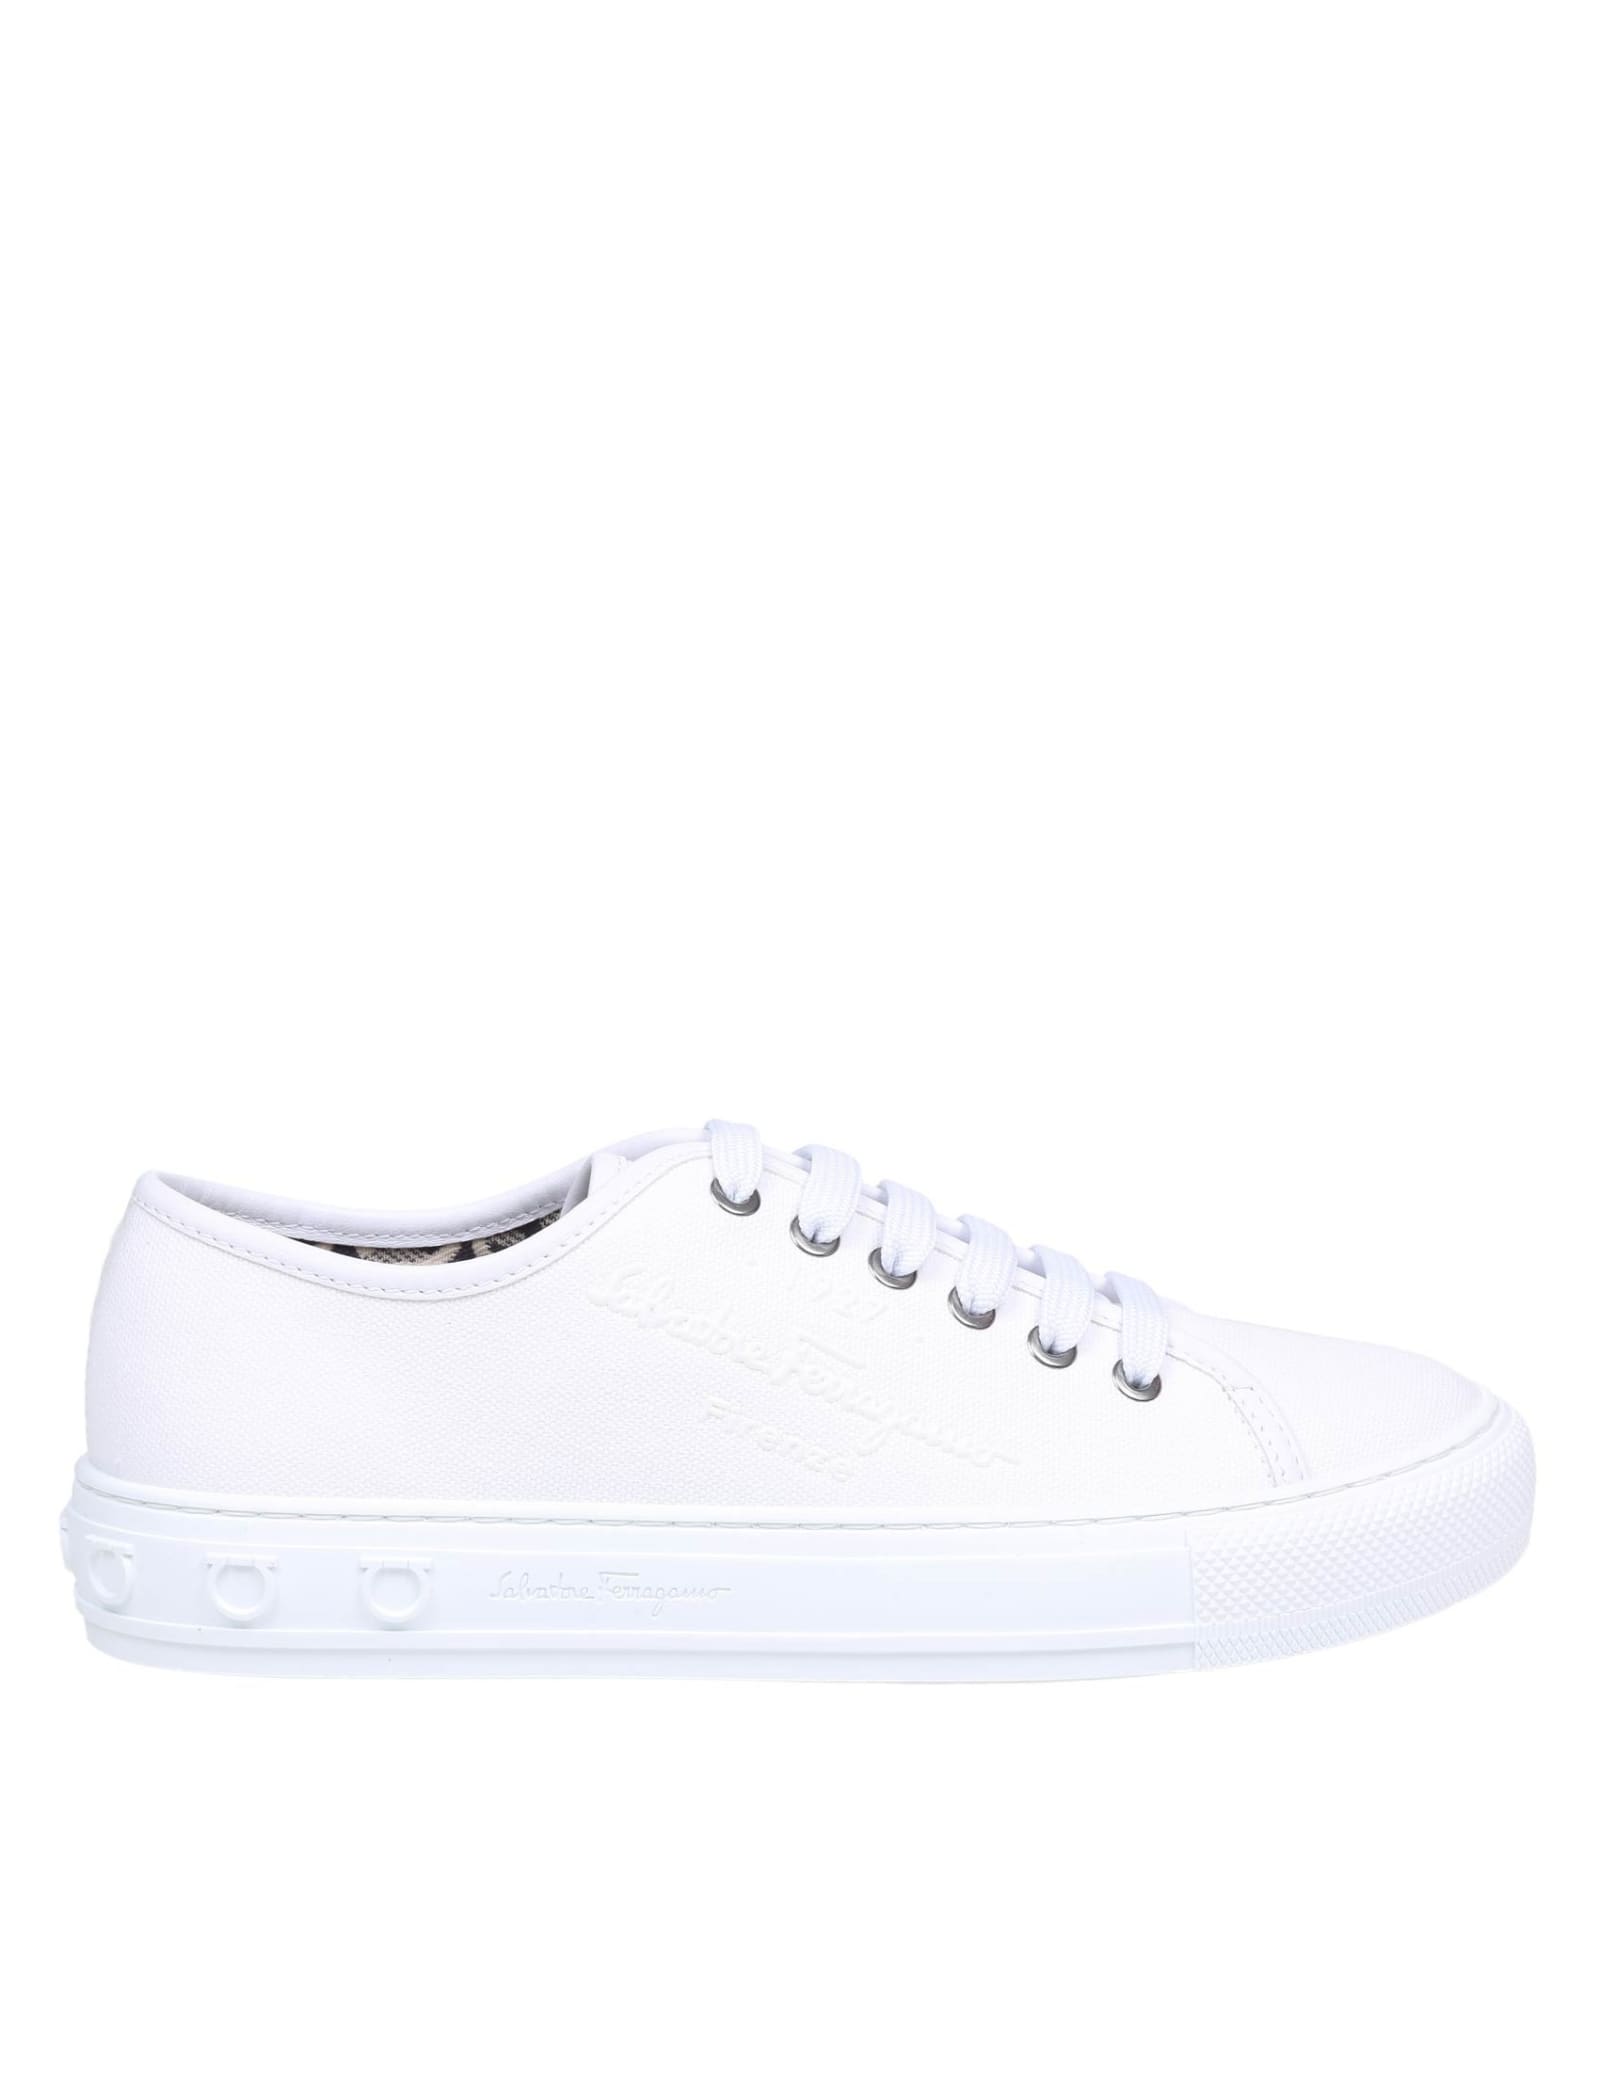 Salvatore Ferragamo Sneakers Color White